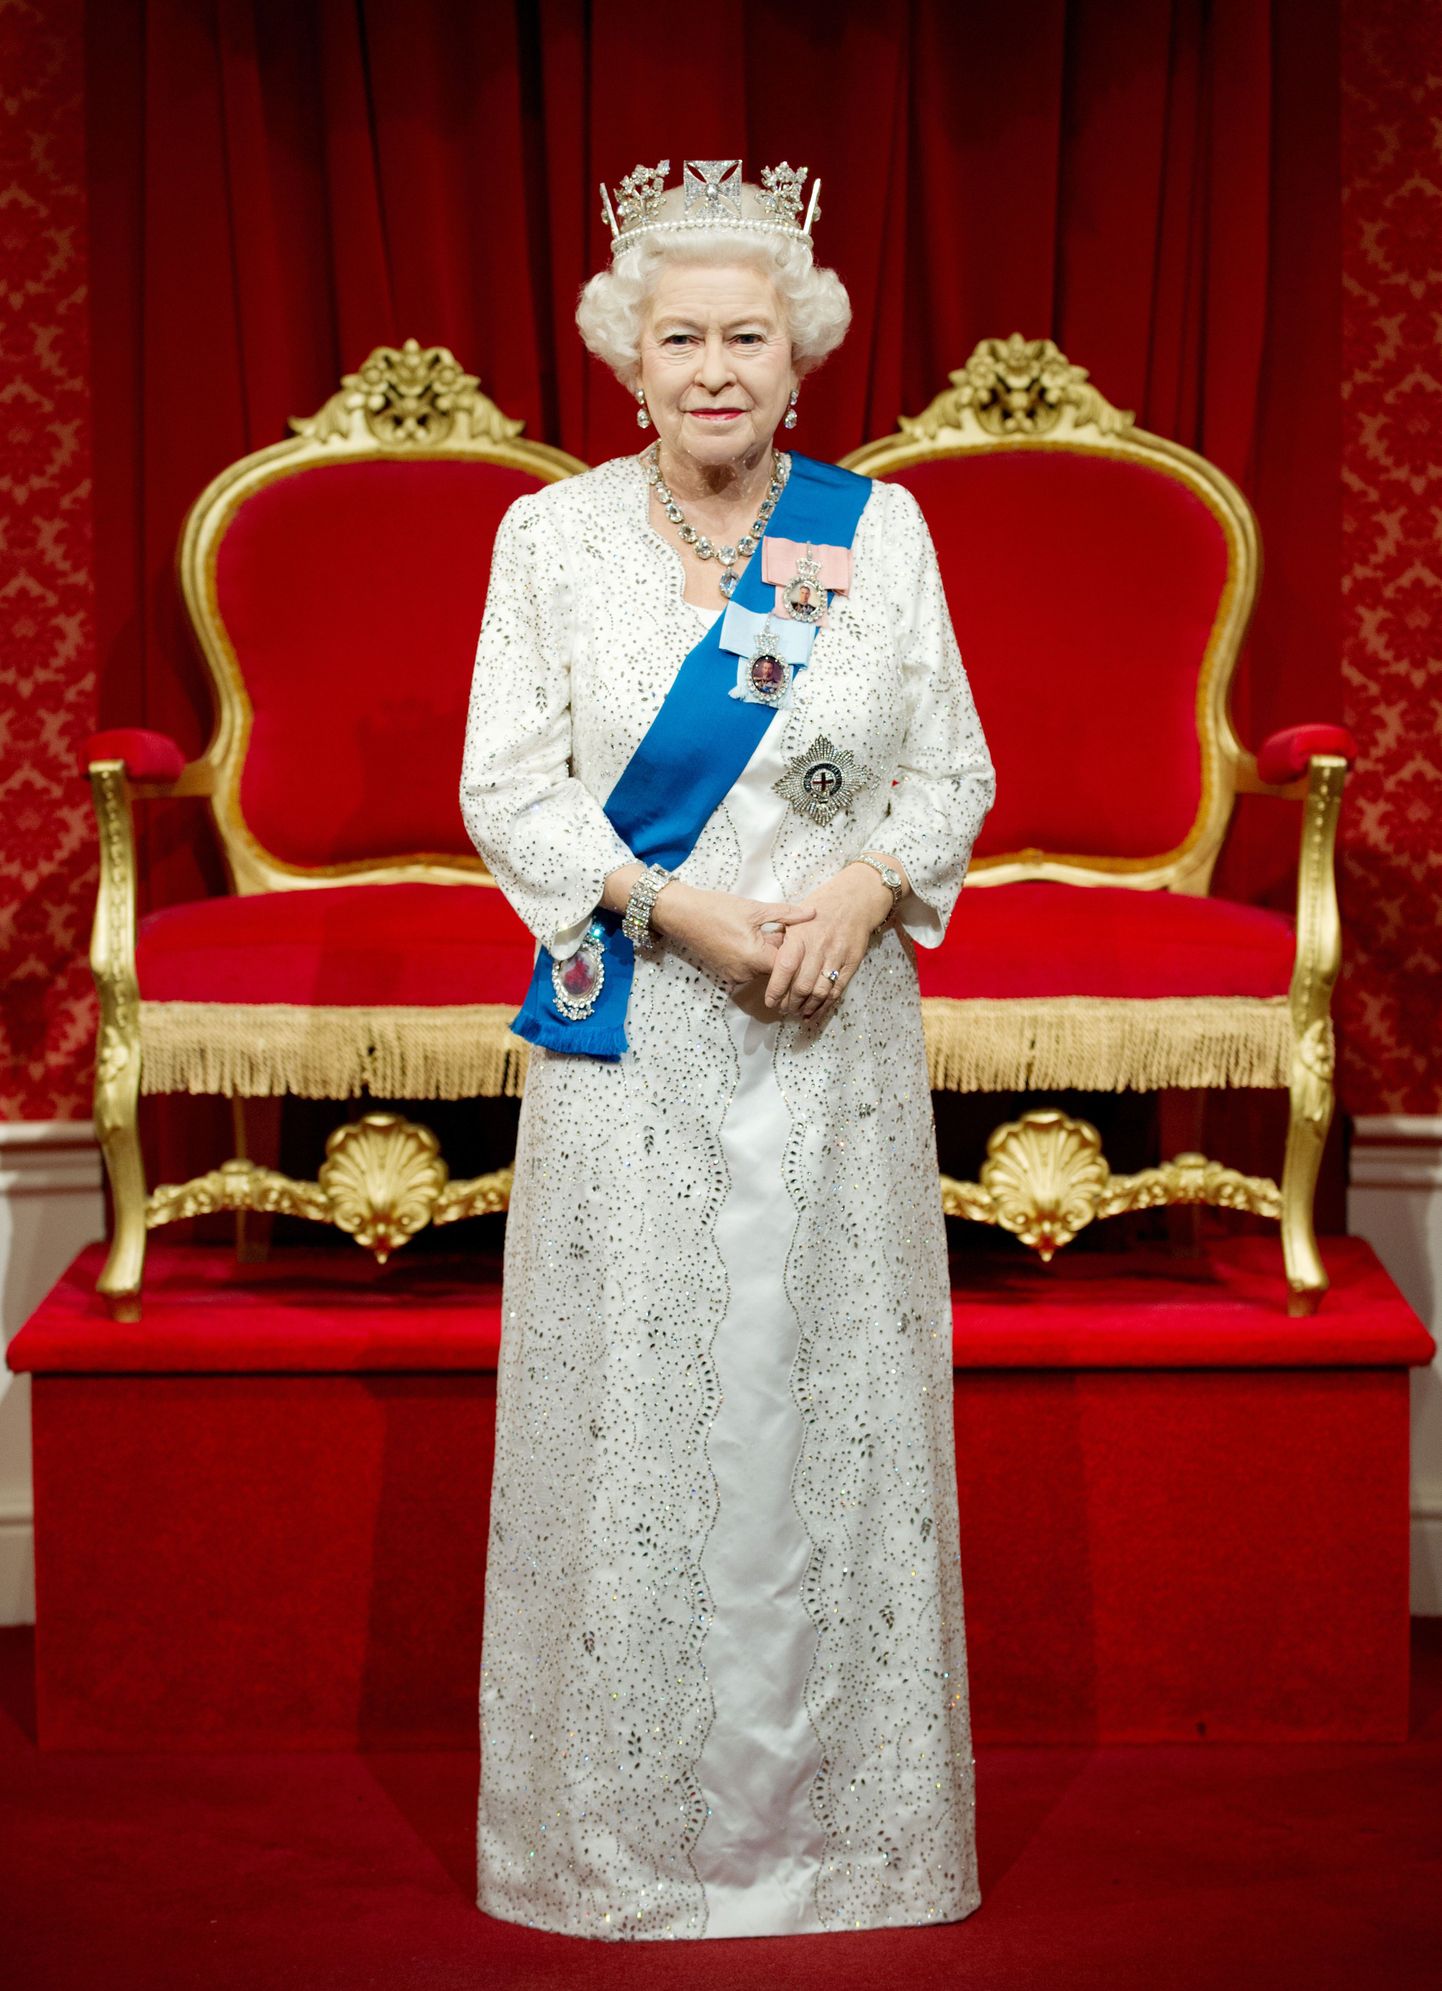 Briti kuninganna Elizabeth II vahakuju